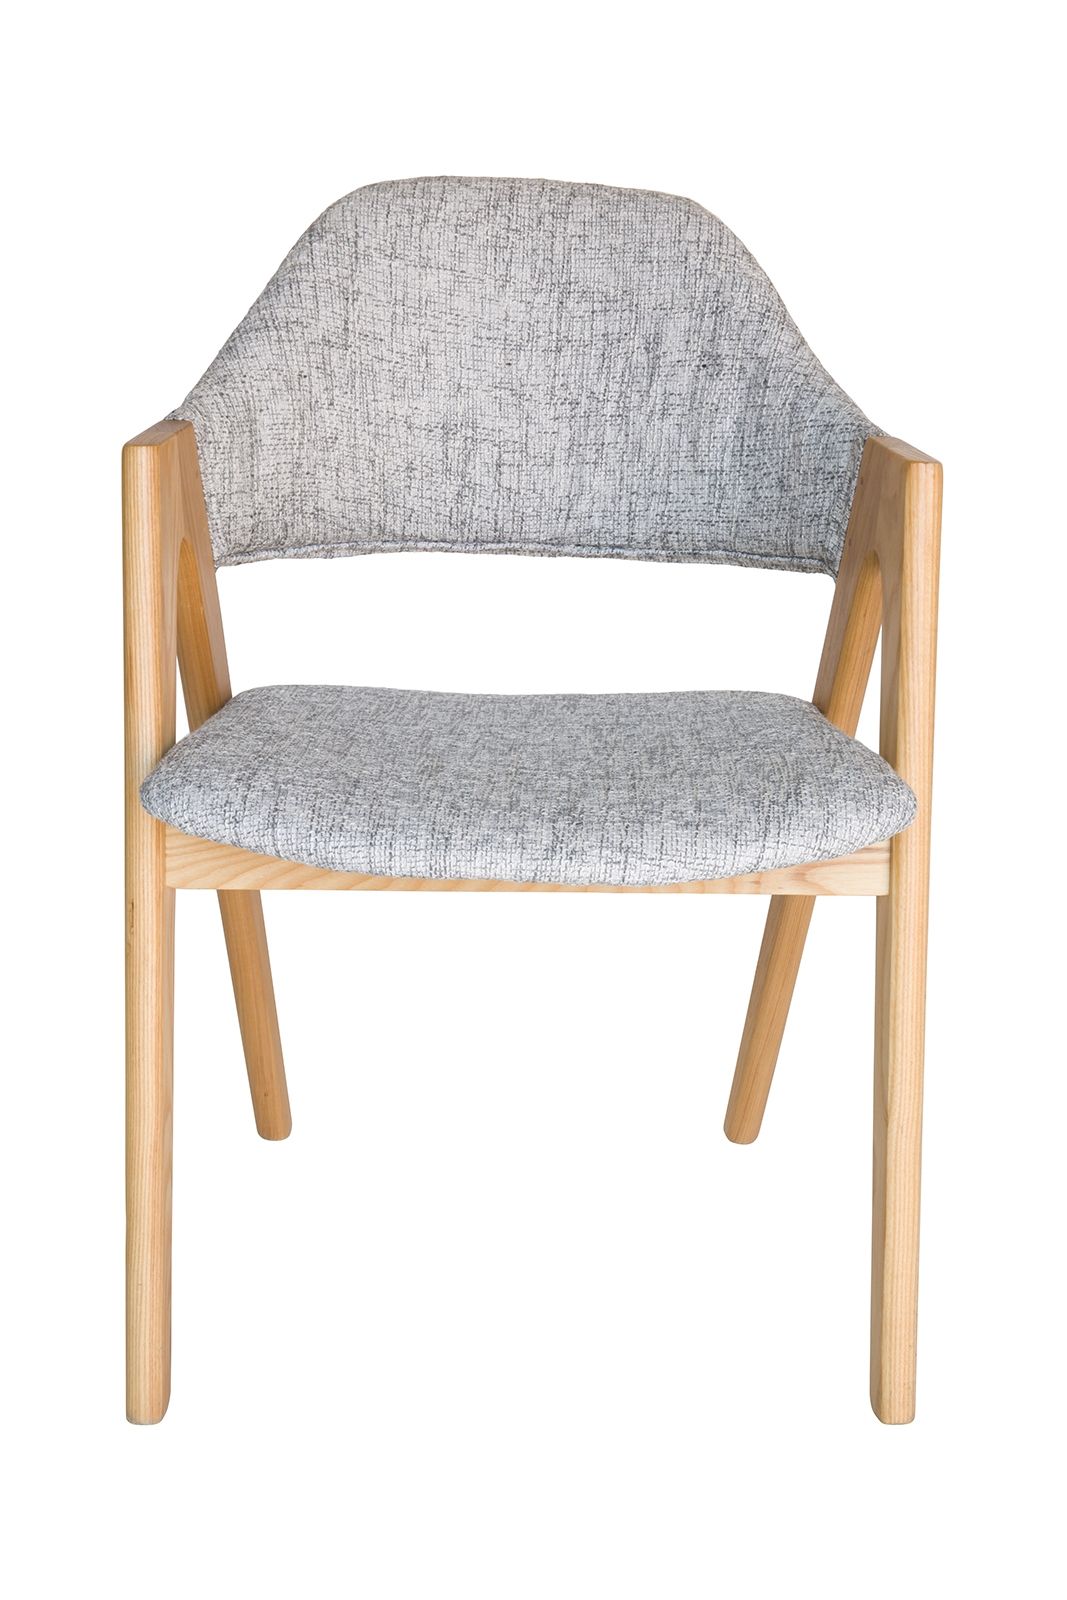 Replica Kai Kristiansen Compass Chair | Textured Light Grey & Natural